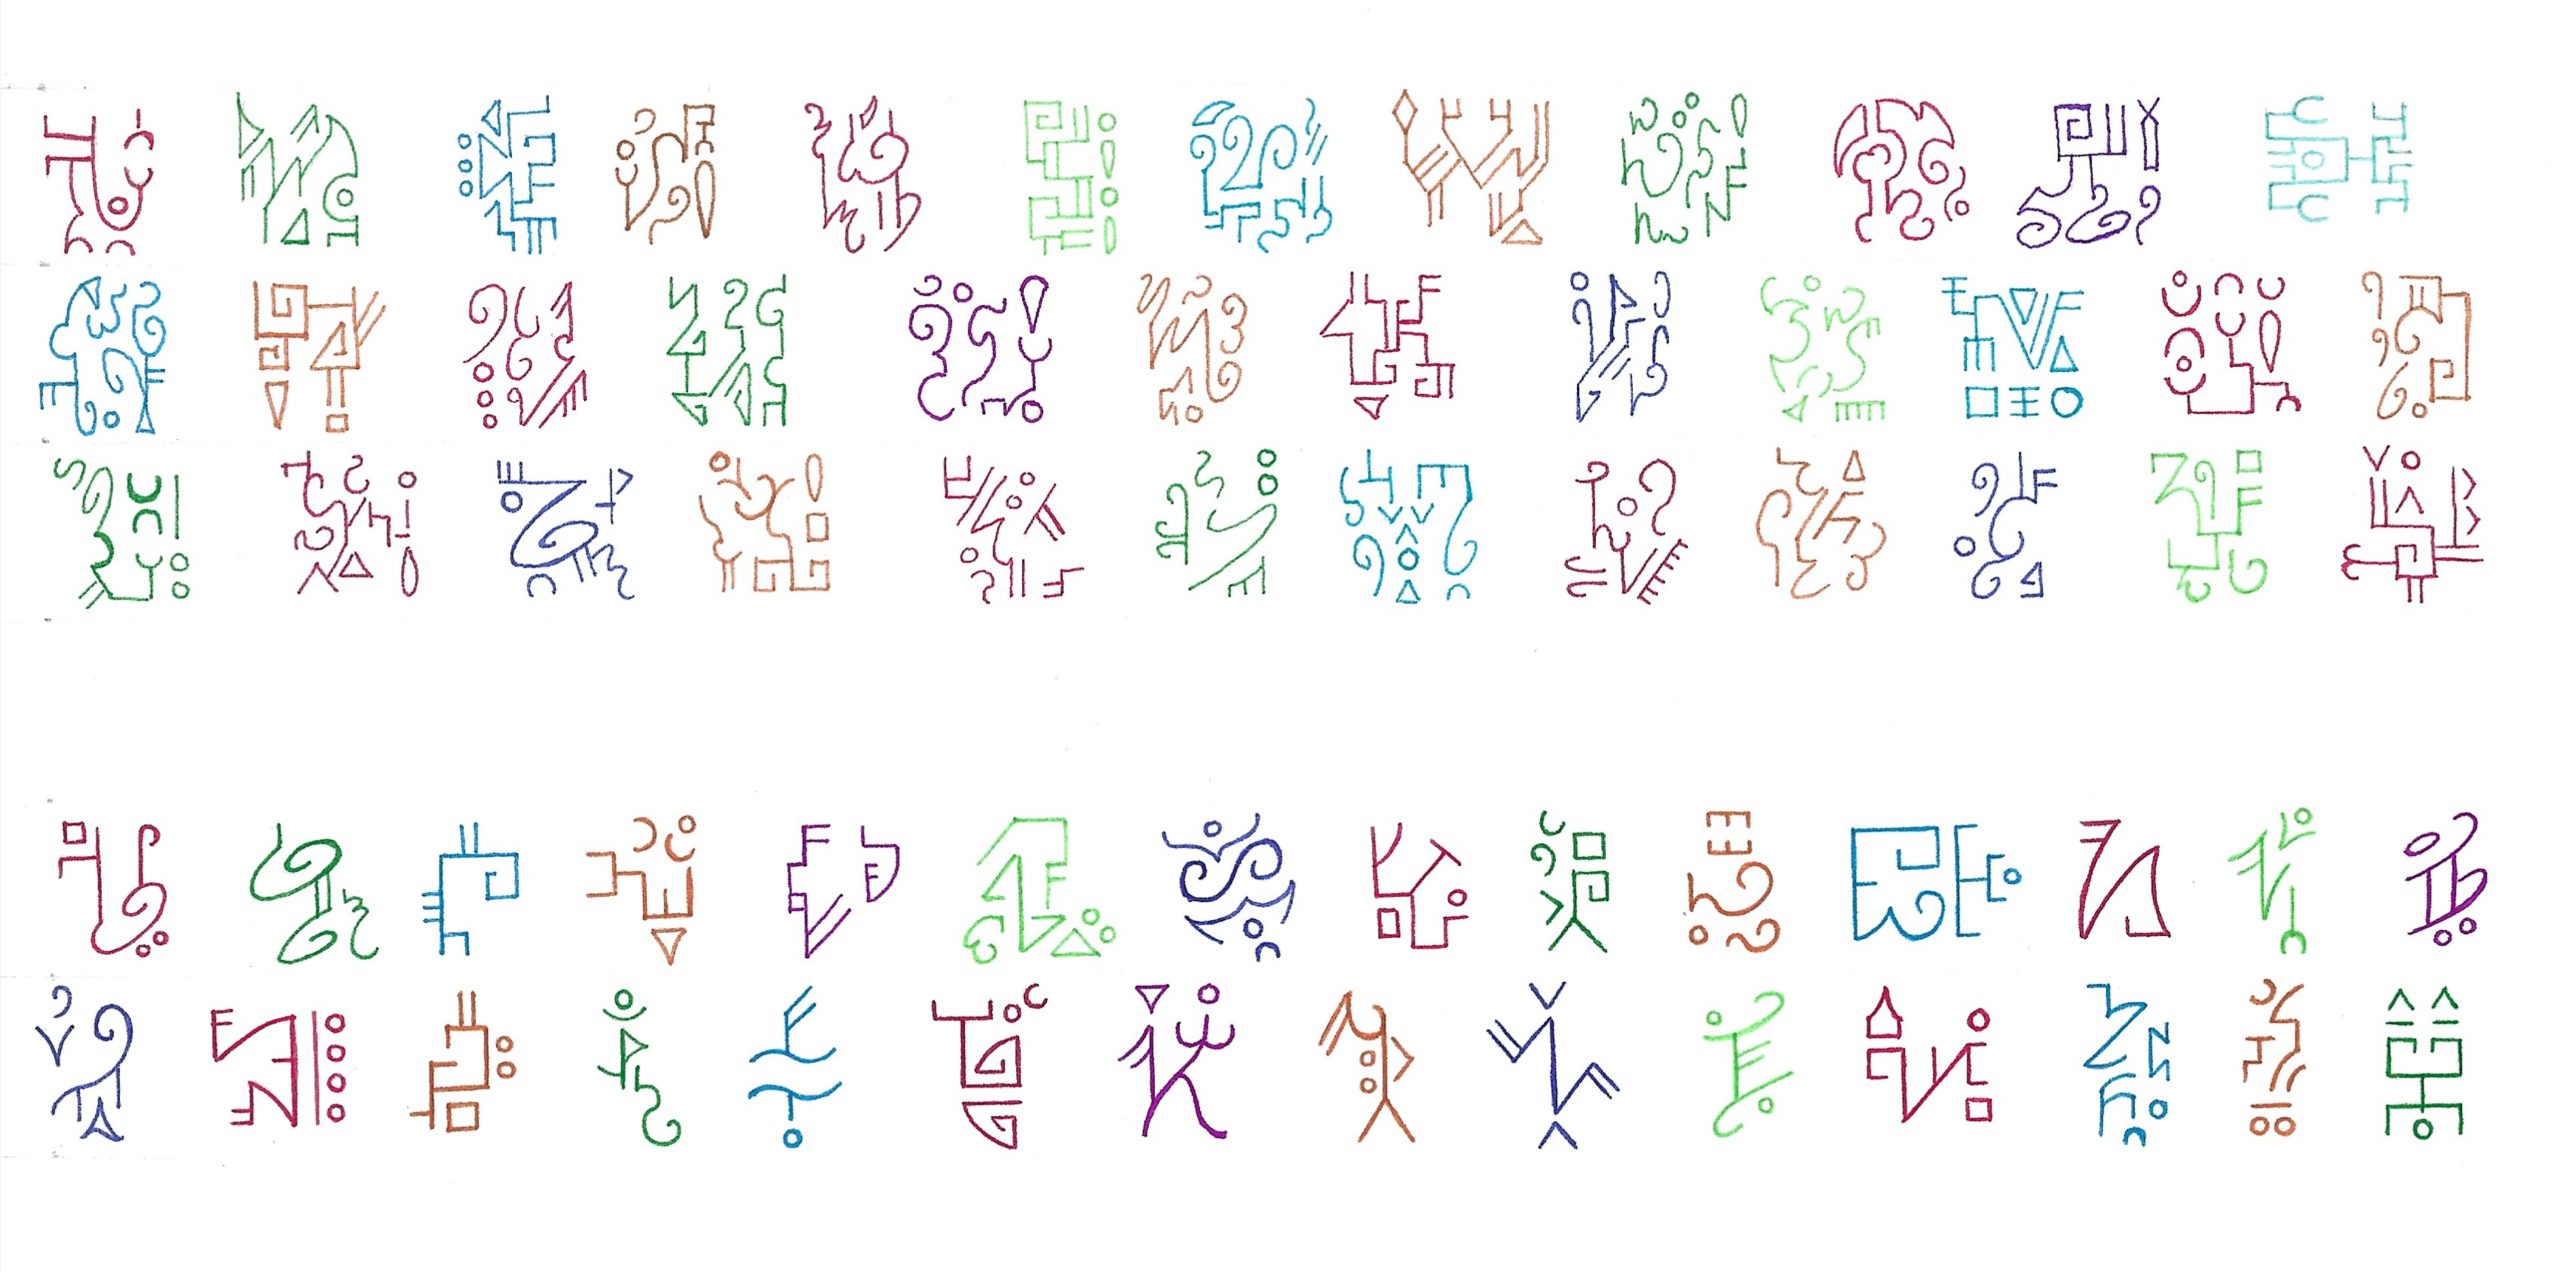 xenoglyphs and asemic writing